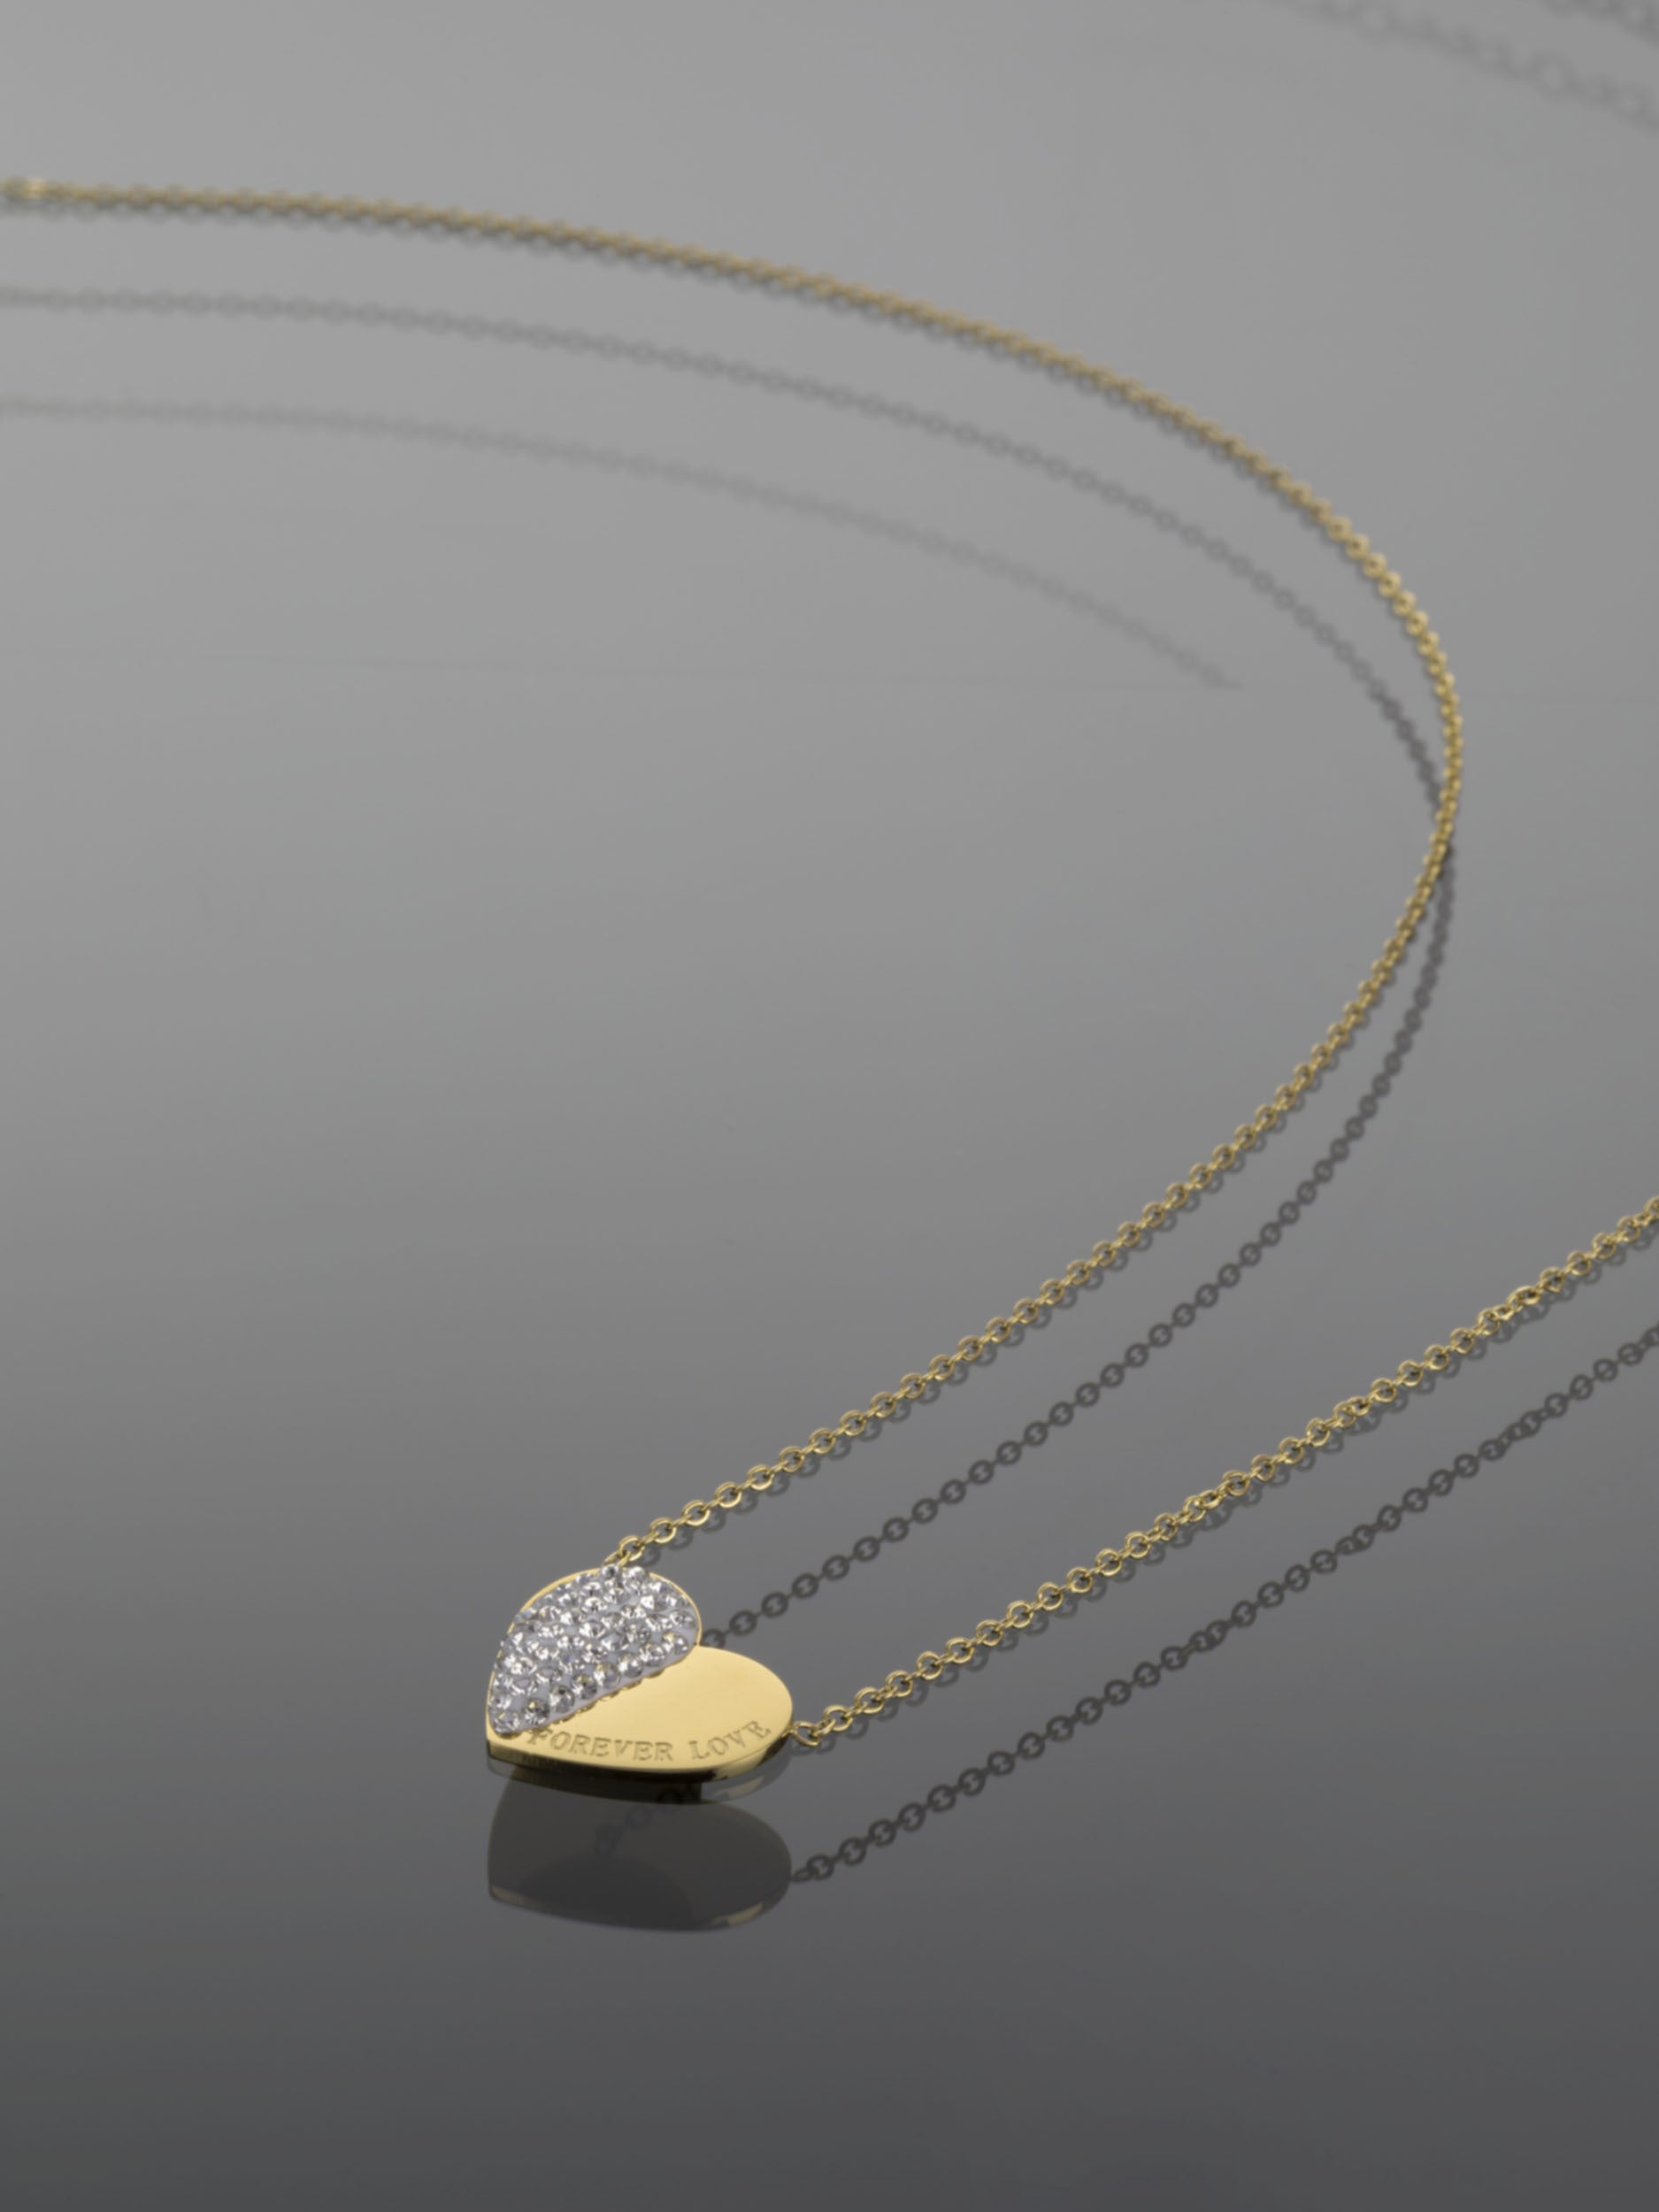 Luxusní ocelový náhrdelník zlaté barvy z poloviny vykládaný čirými krystaly NK0684-0114